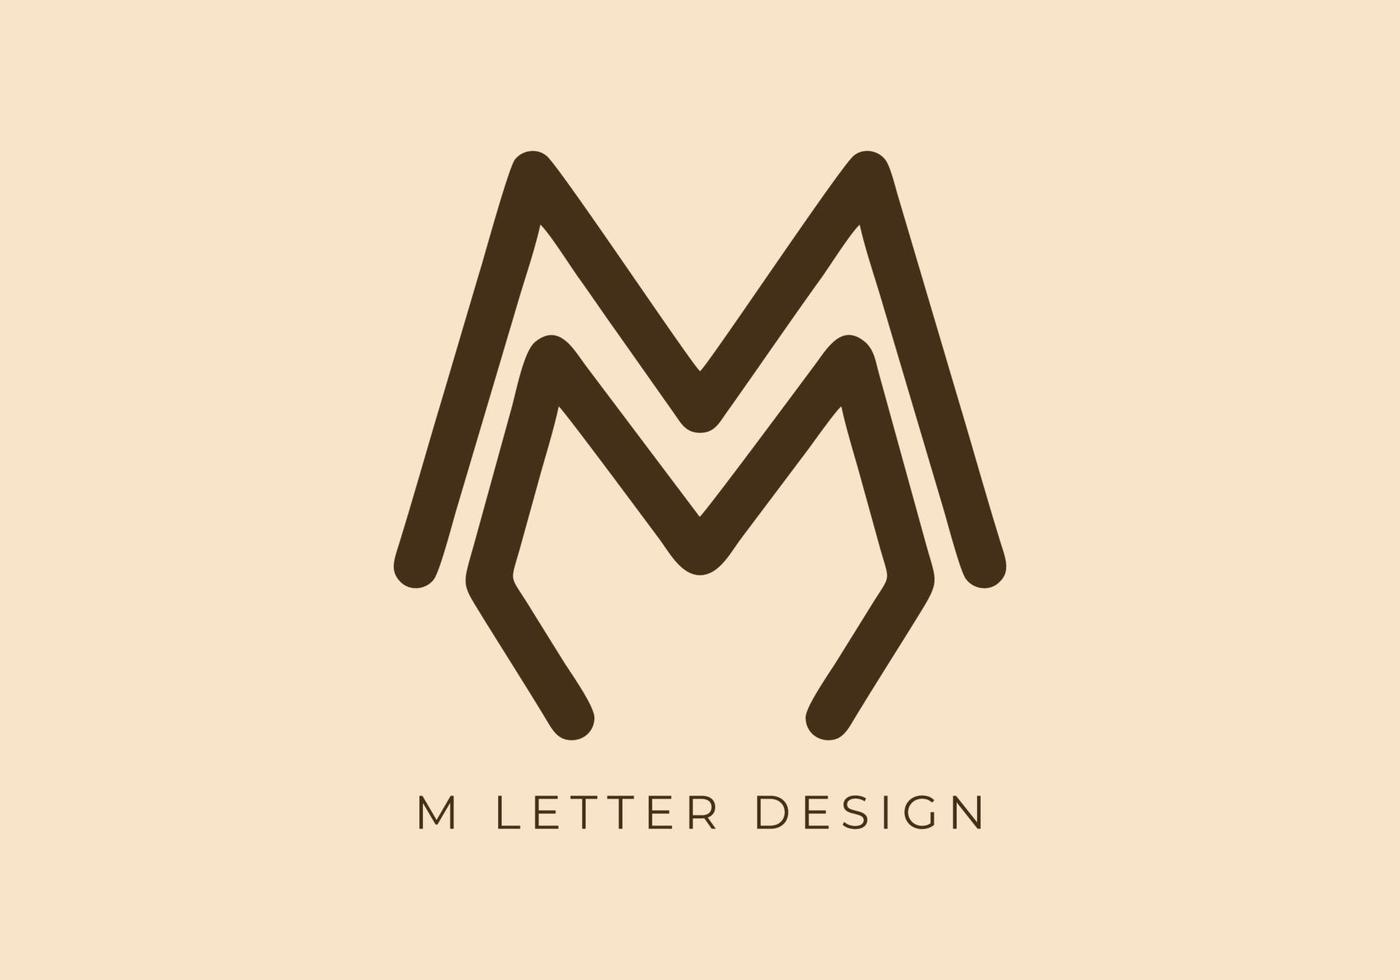 unico mono linea design di m iniziale lettera vettore